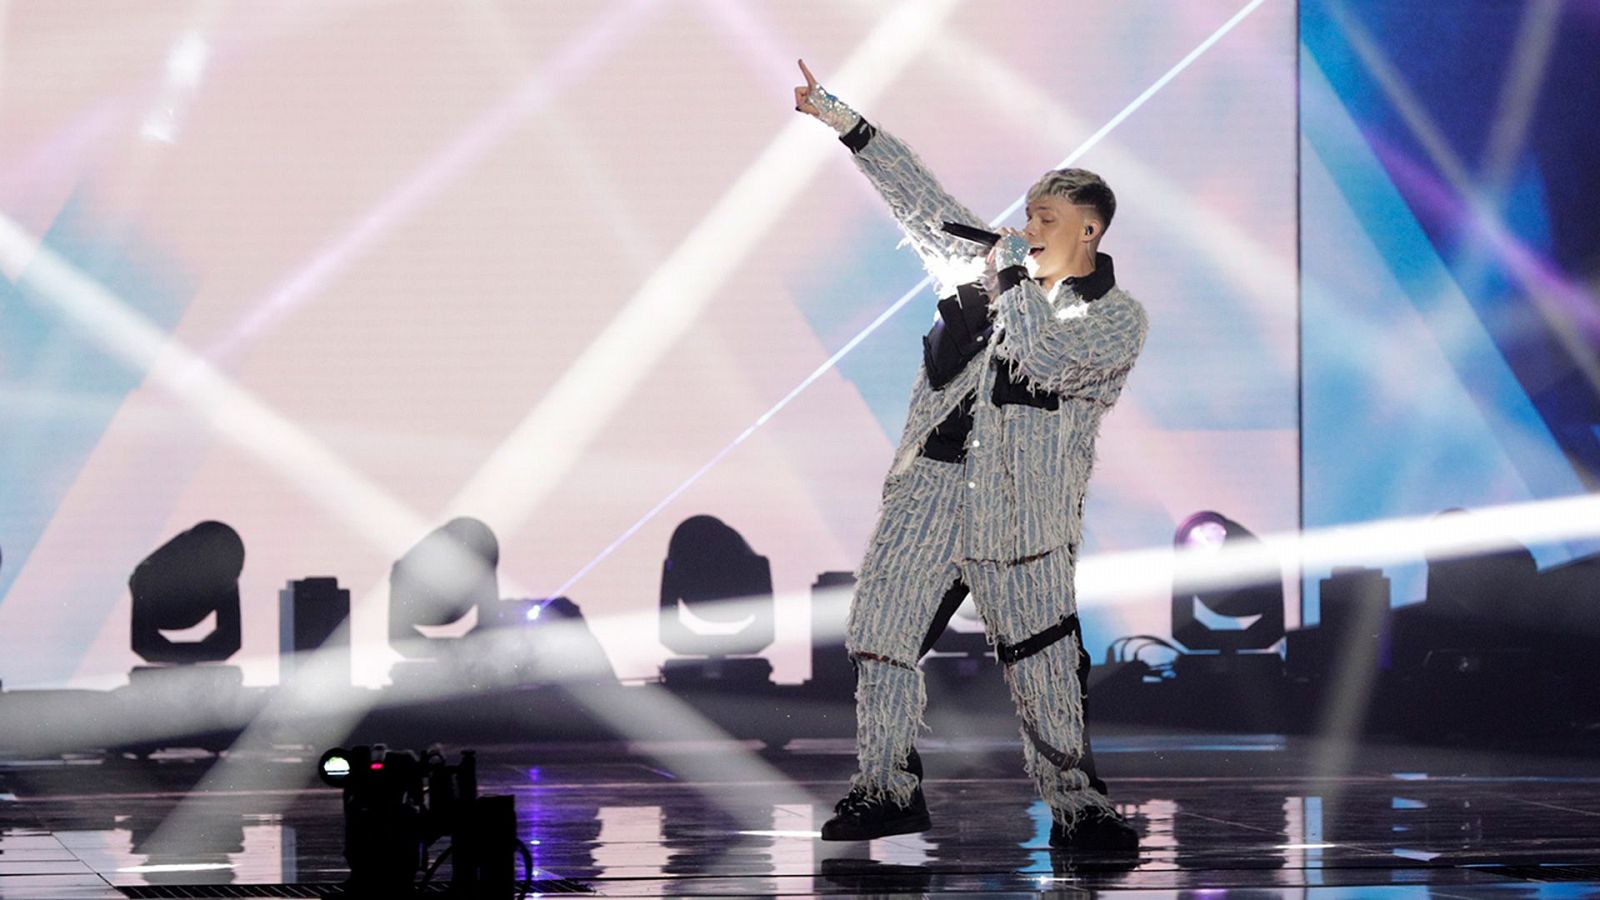 Benidorm Fest - Almácor canta “Brillos platino” en la segunda semifinal